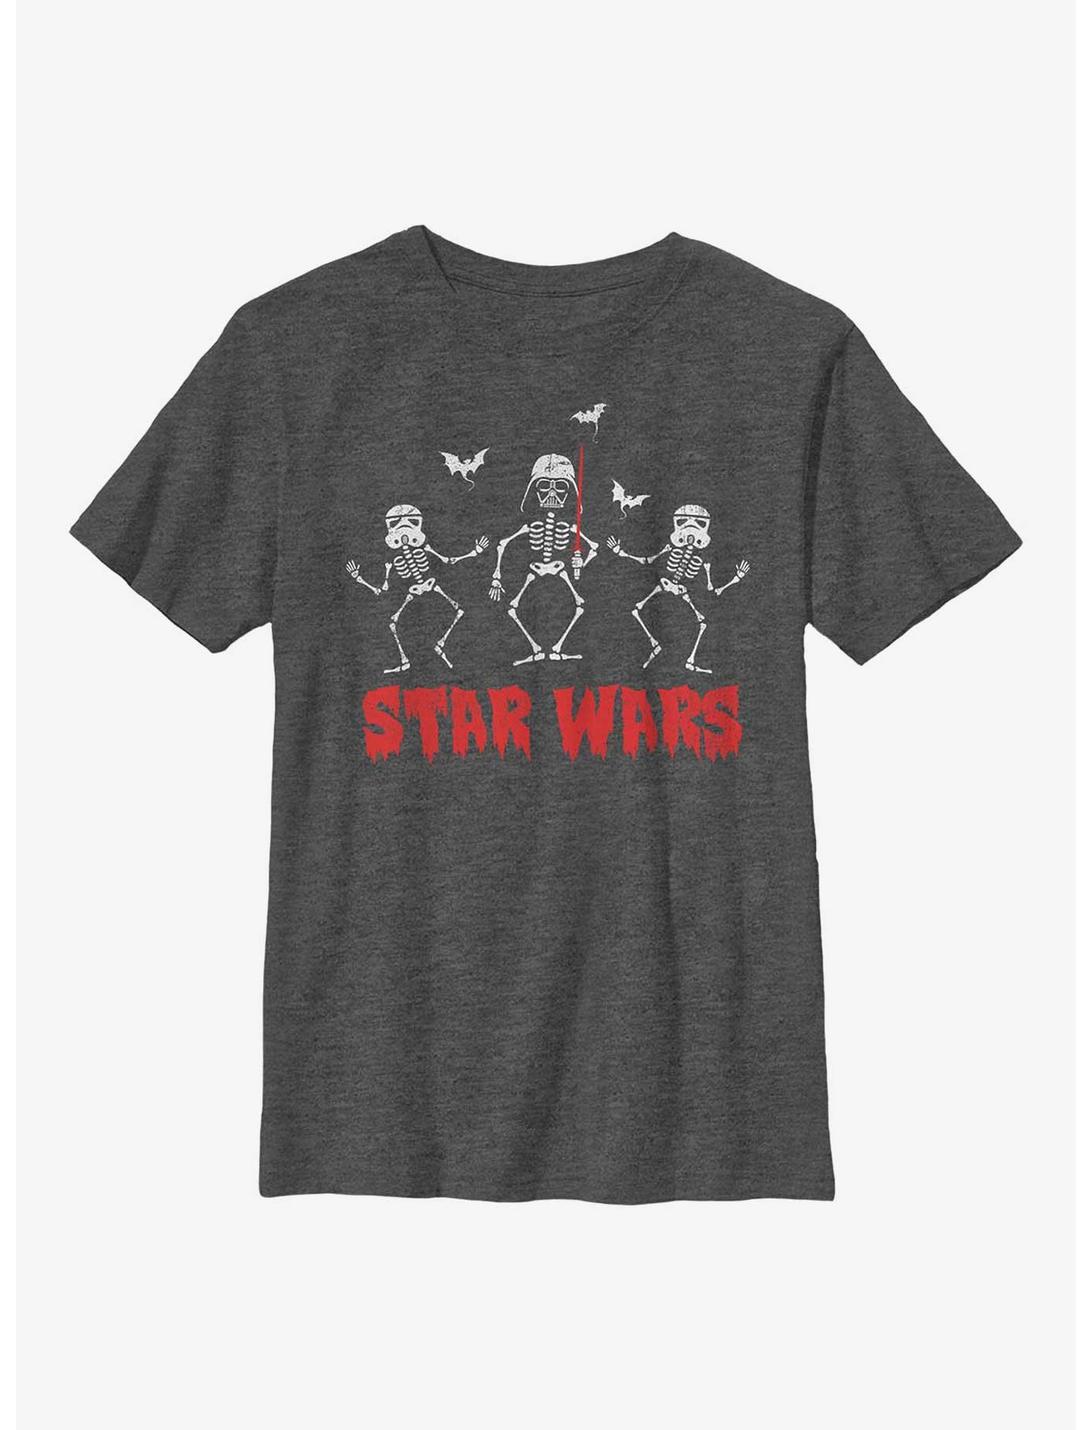 Star Wars Creep Wars Youth T-Shirt, CHAR HTR, hi-res